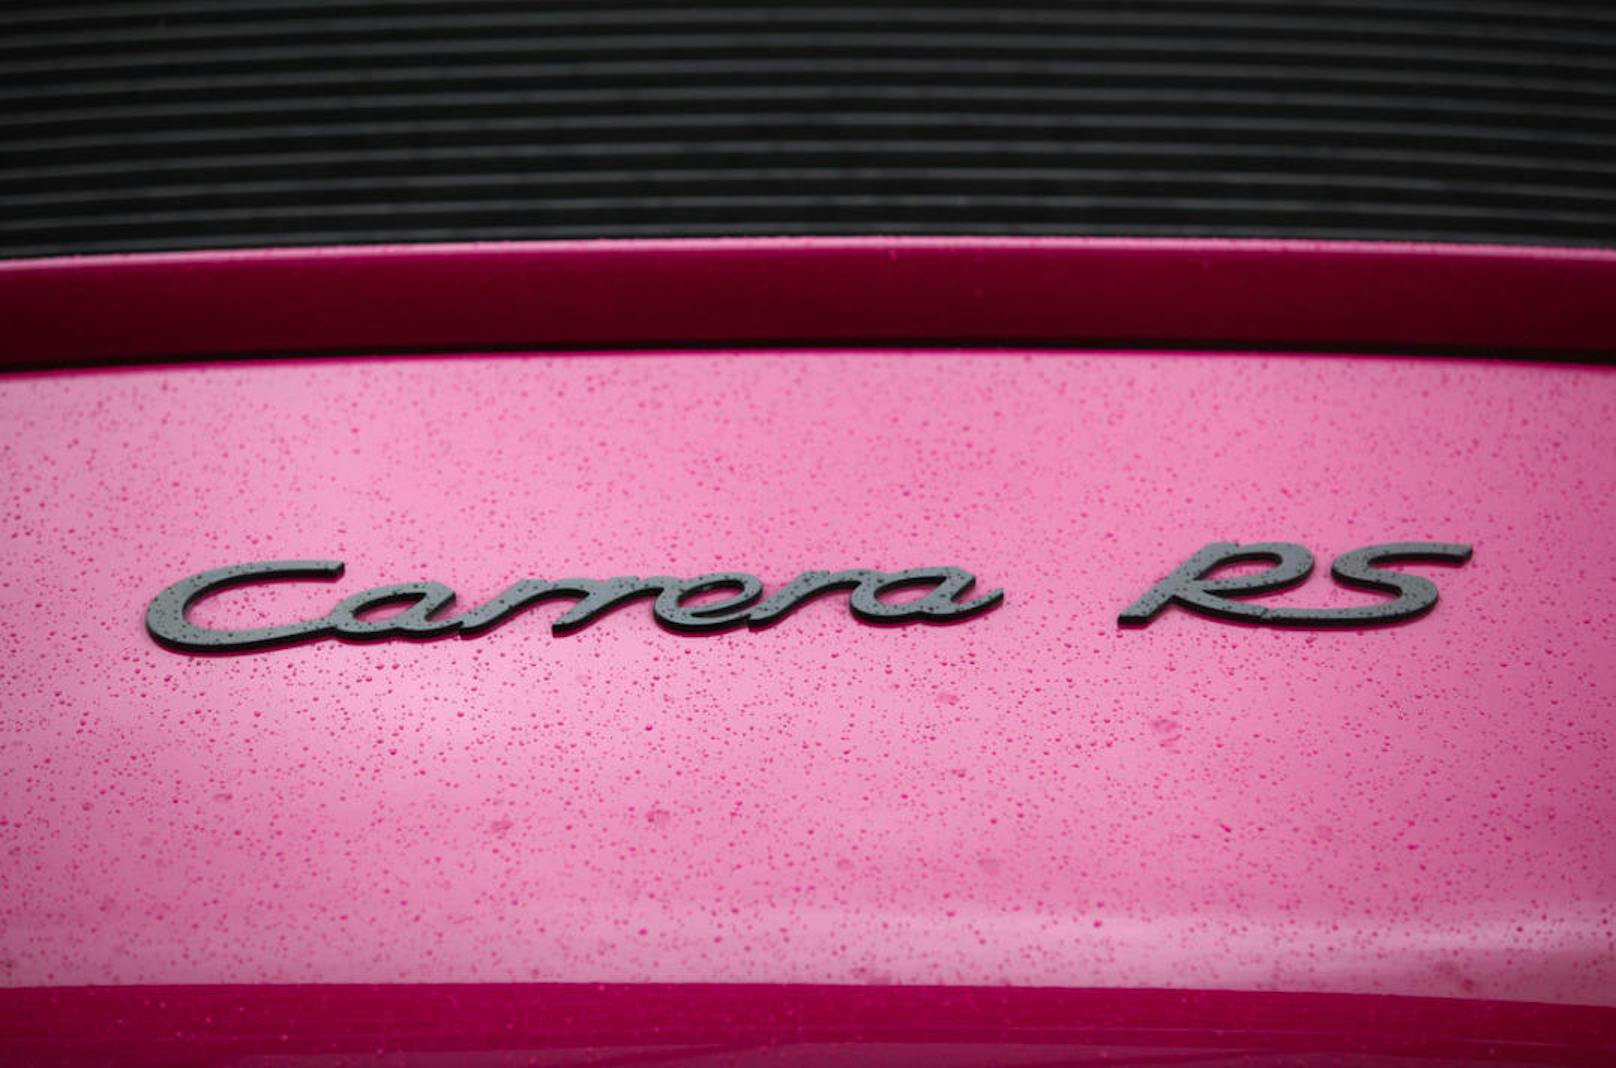 Sorgt schon im Stand für hohe Erwartungen - der Schriftzug "Carrera RS".